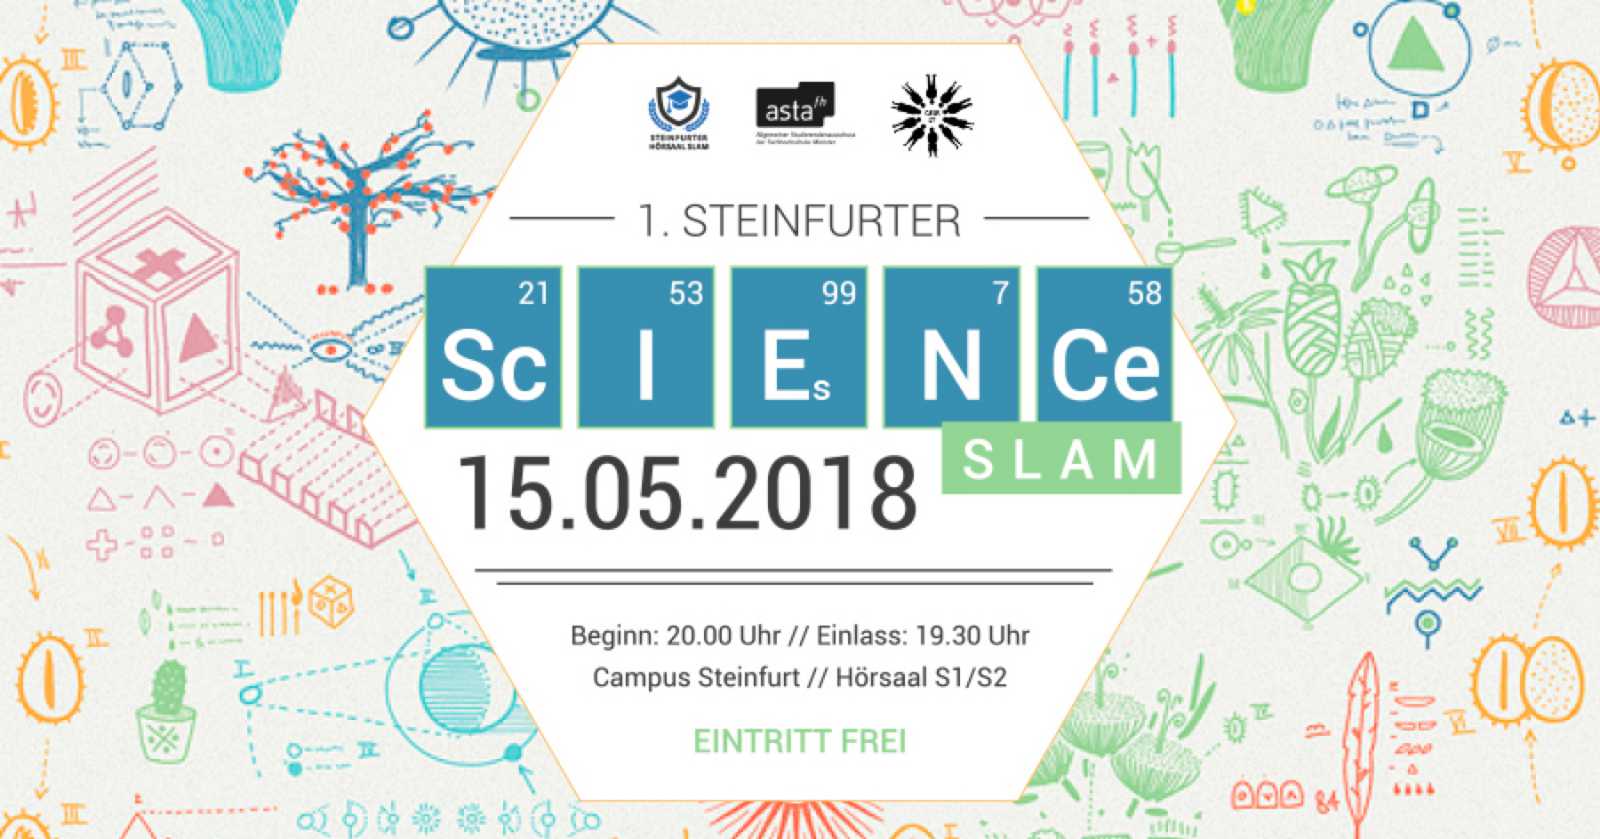 Wissenschaft ohne Fachchinesisch: Am Dienstag (15. Mai) startet der erste Steinfurter Science Slam um 20 Uhr. (Grafik: AStA)